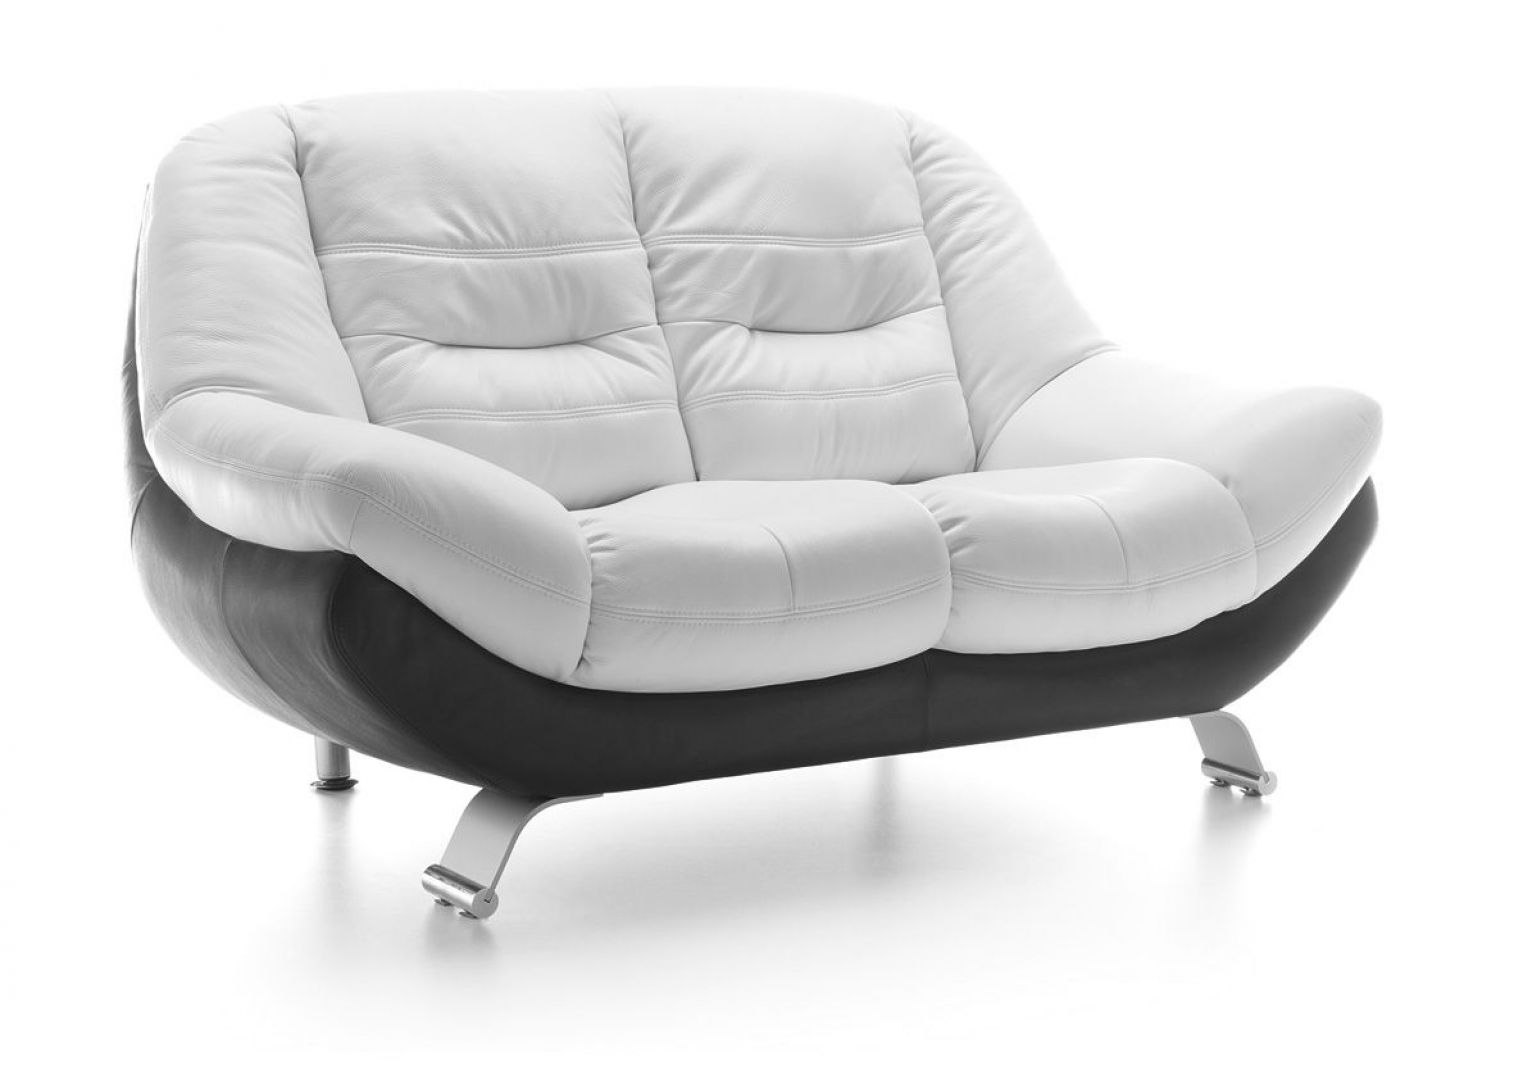 Niebanalny, łagodnie wygięty kształt sofy „Mello” zachęca do odpoczynku. Miękkie, kubełkowo wyprofilowane siedzisko pozwala zająć najwygodniejszą pozycję. Fot. Gala Collezione